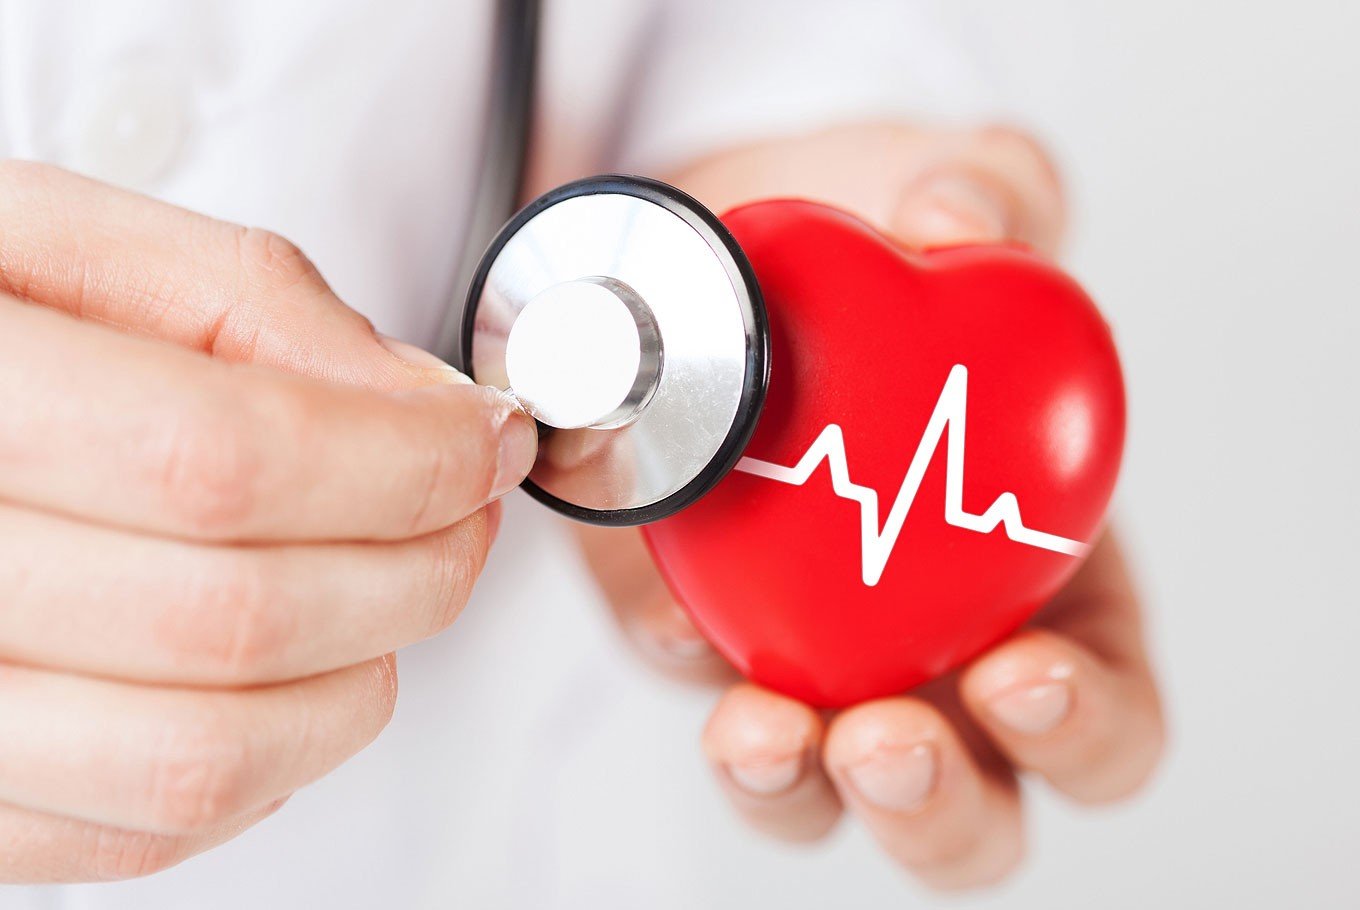 egészségügyi cikkek szívbetegség Smart Health Pro pulzusmérő óra